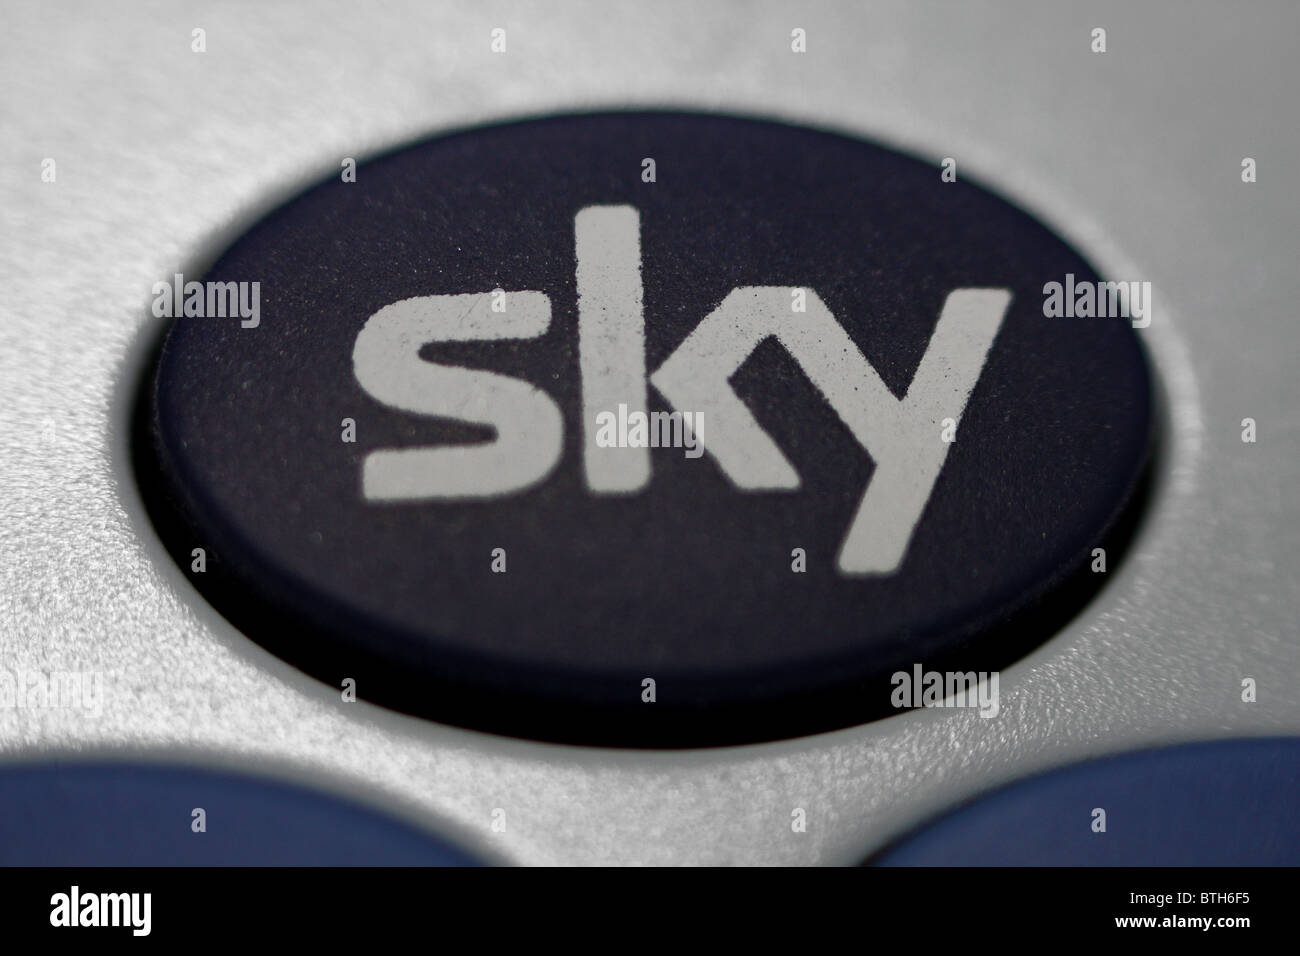 Die tief blaue Taste für Sky TV auf einem Himmel gebrandmarkt Fernbedienung  Stockfotografie - Alamy